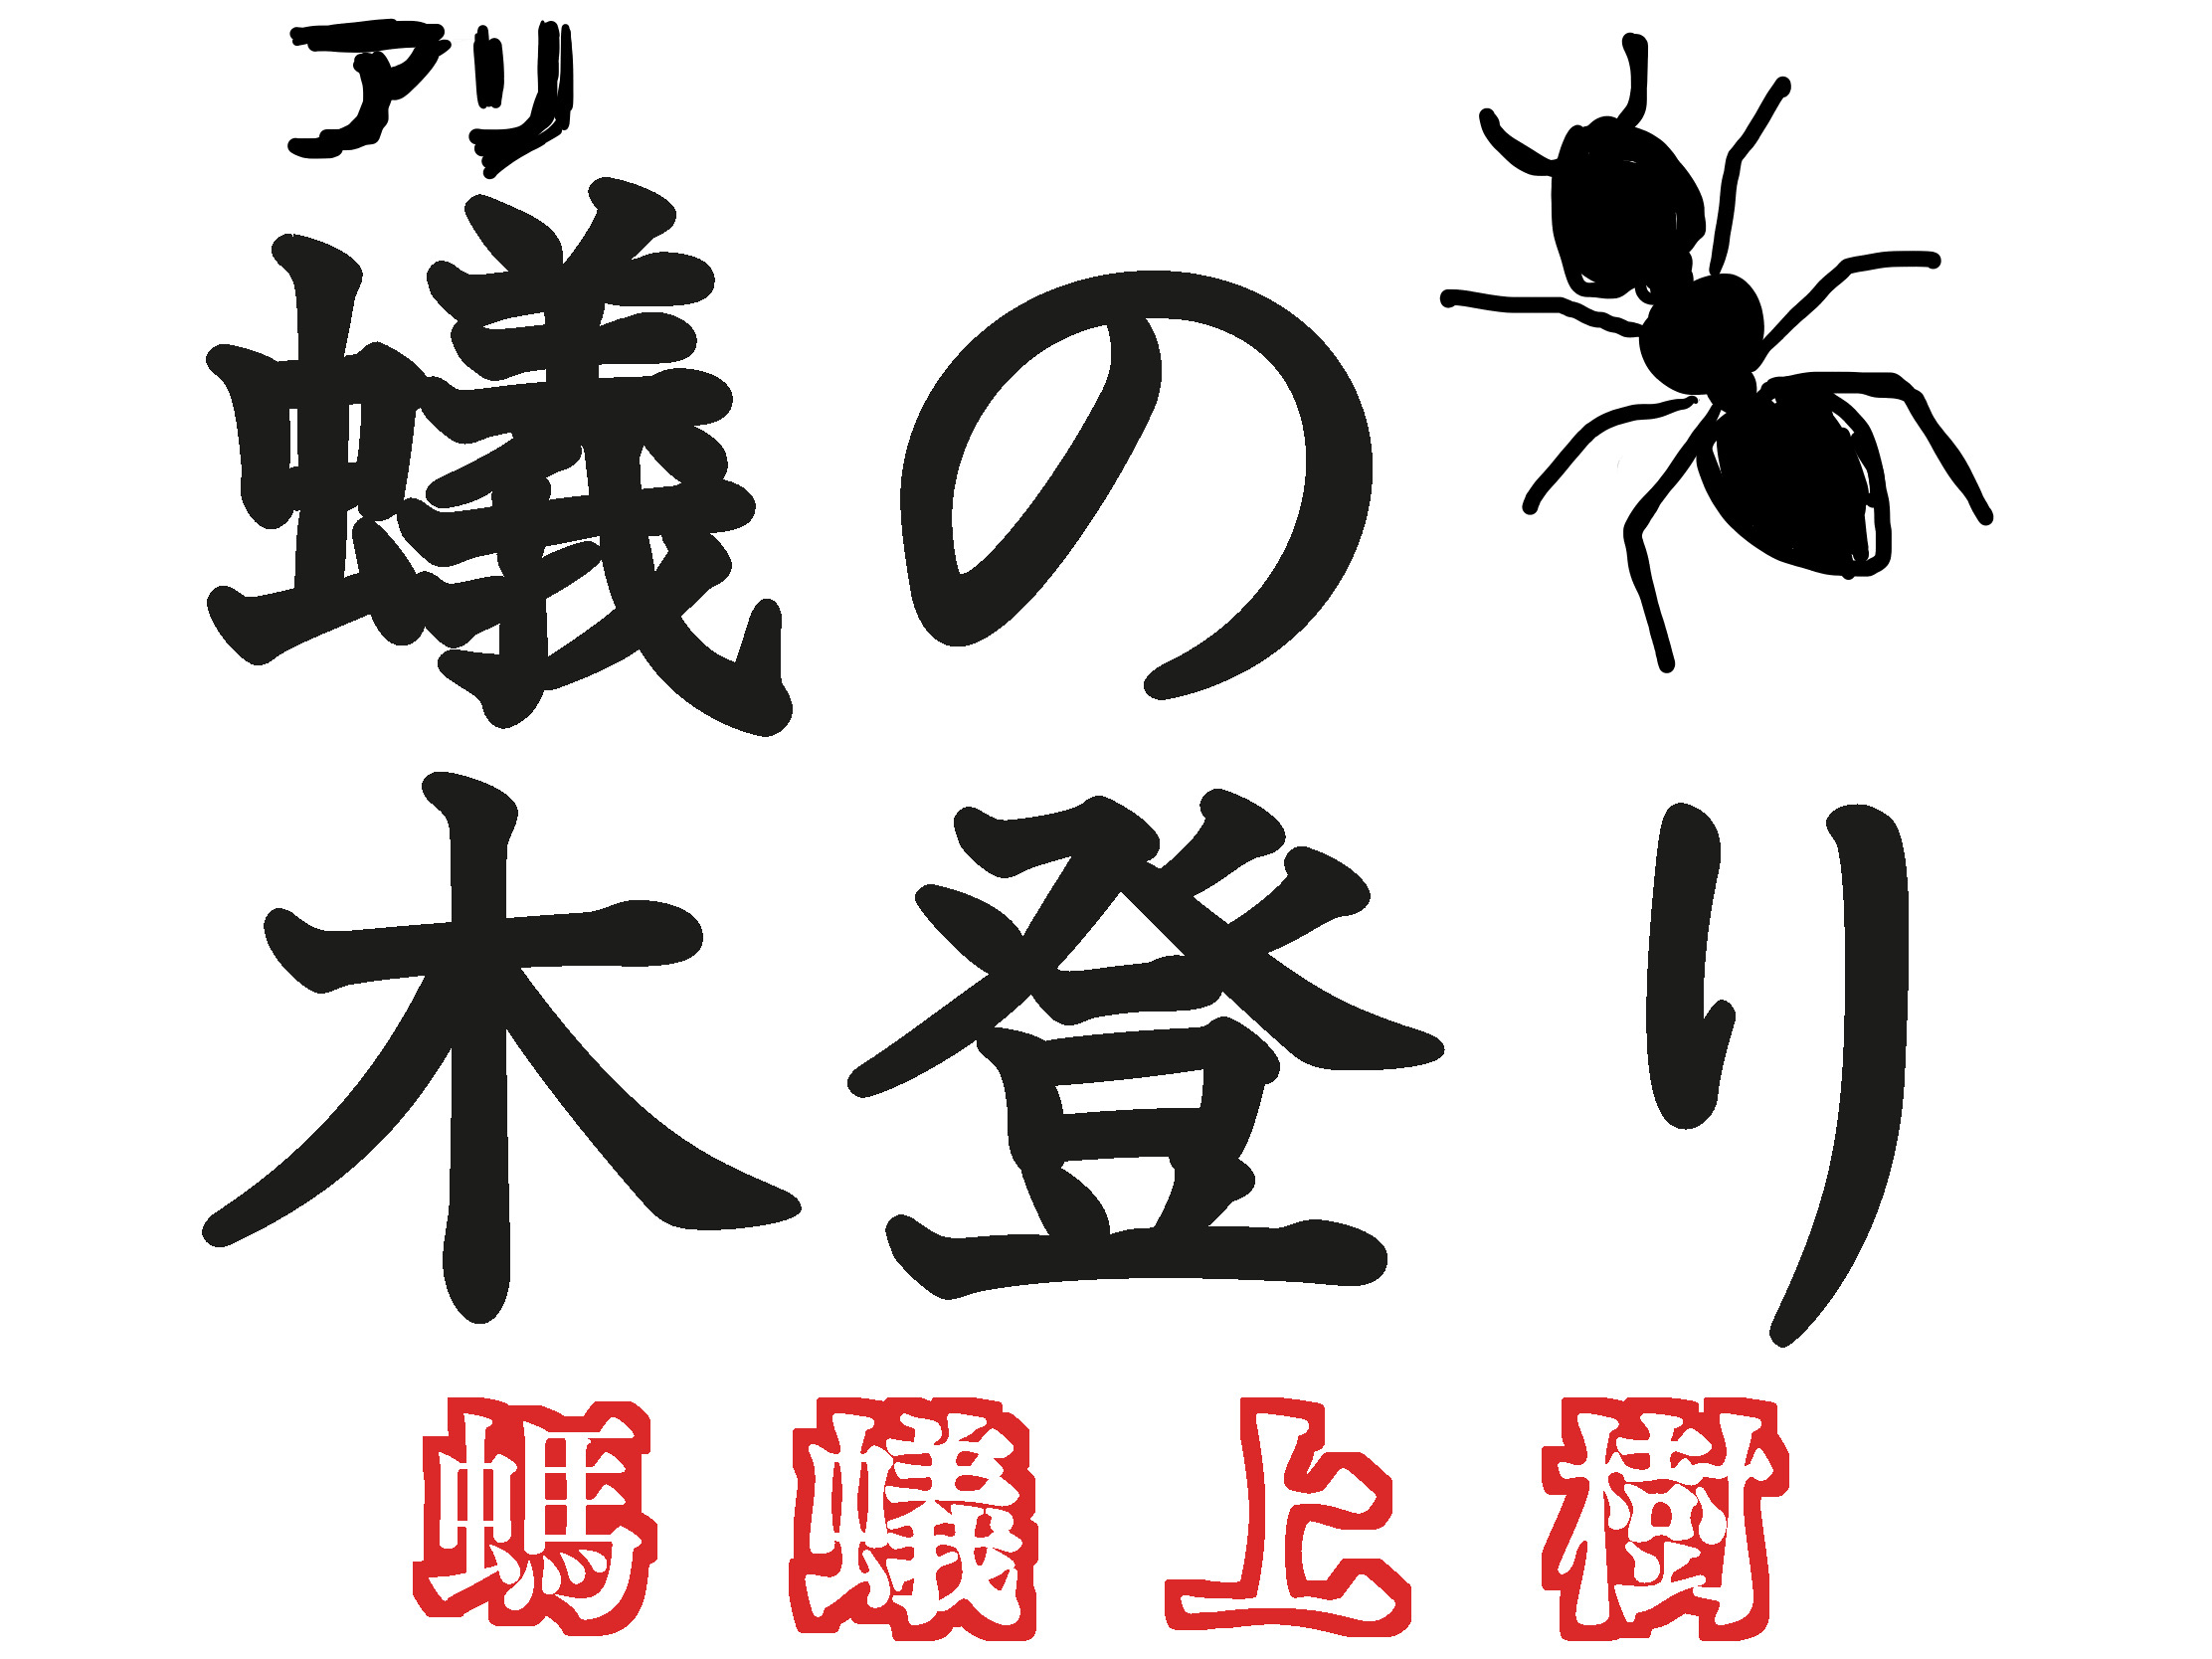 クイズ この中国料理の日本語名は何でしょう アリの木登り 螞蟻上樹 丸美屋の素にもある超メジャーなあのメニュー 沢井メグのリアル中華 第19回 ロケットニュース24